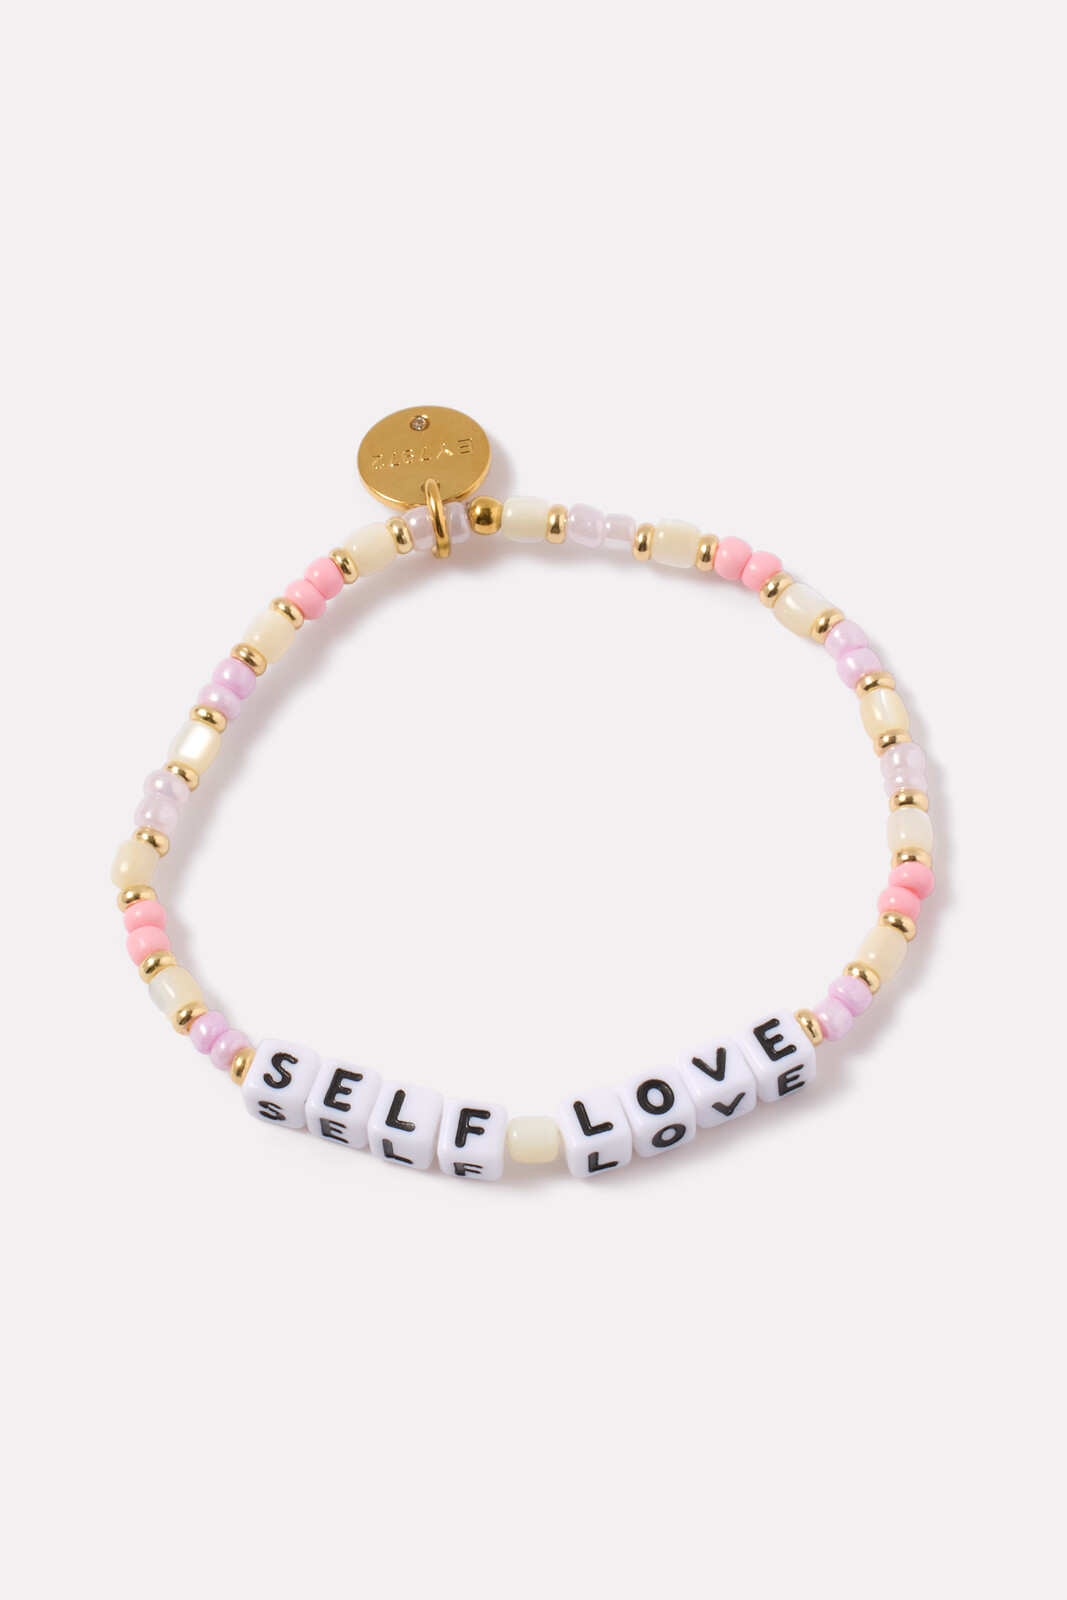 Self Love Bracelet